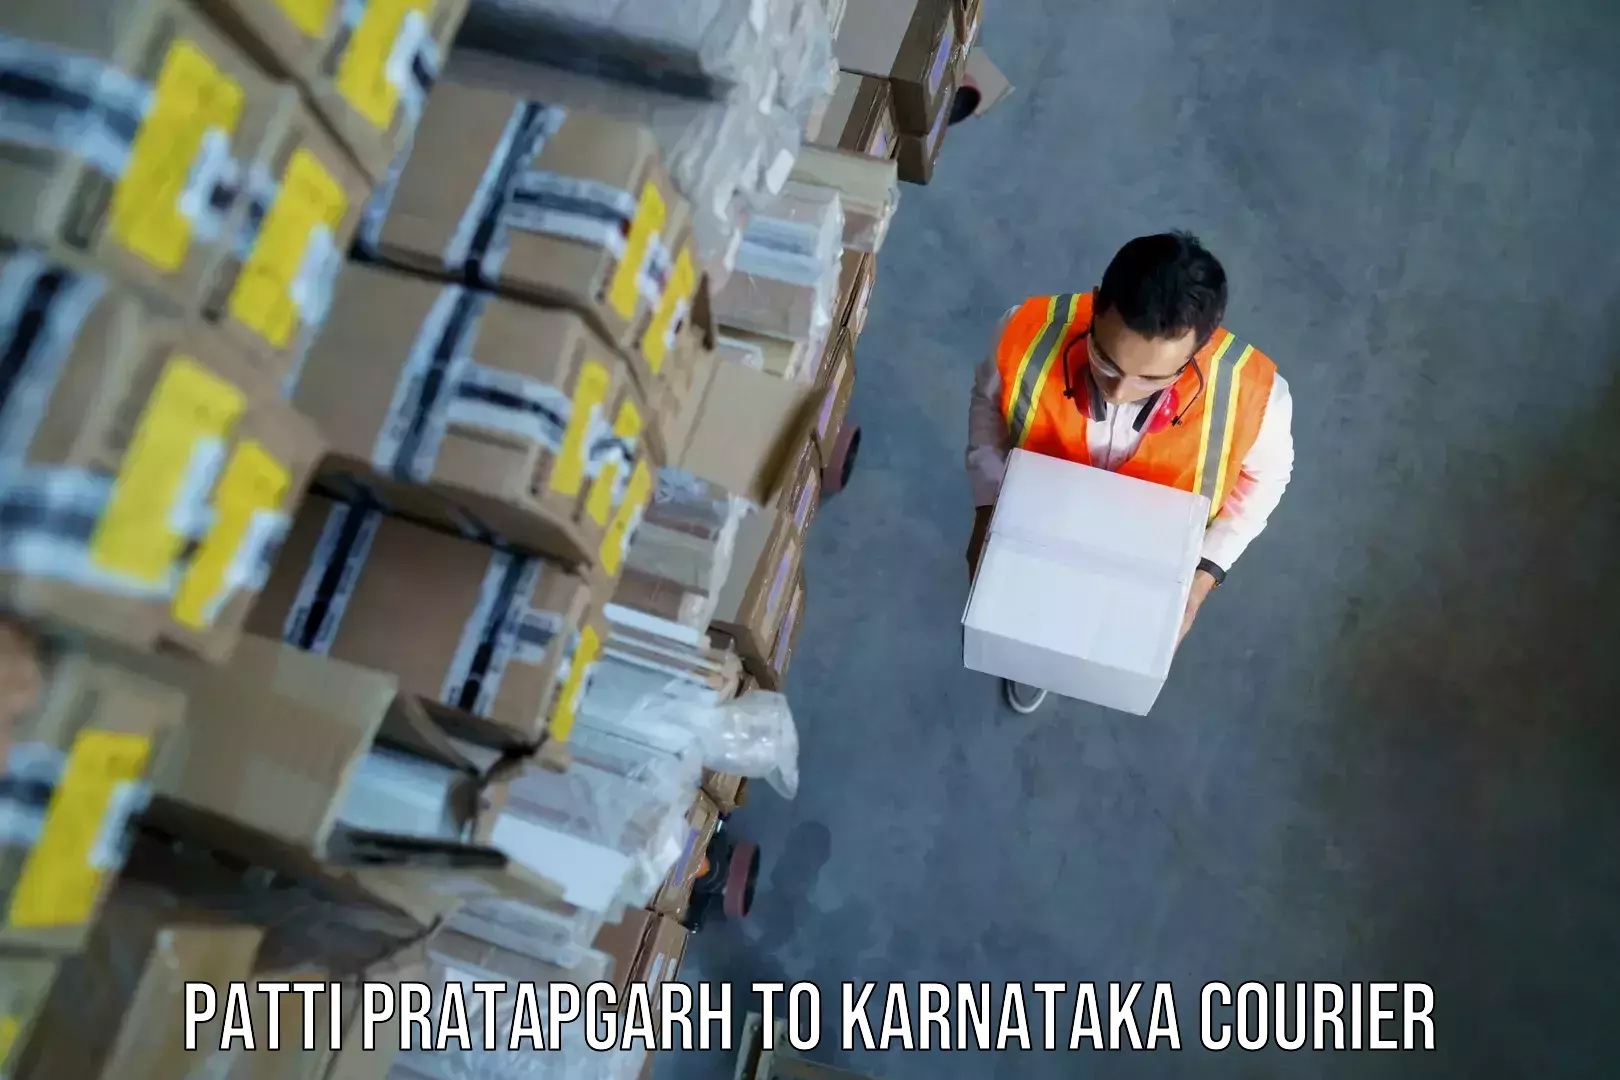 Baggage shipping advice Patti Pratapgarh to Karnataka